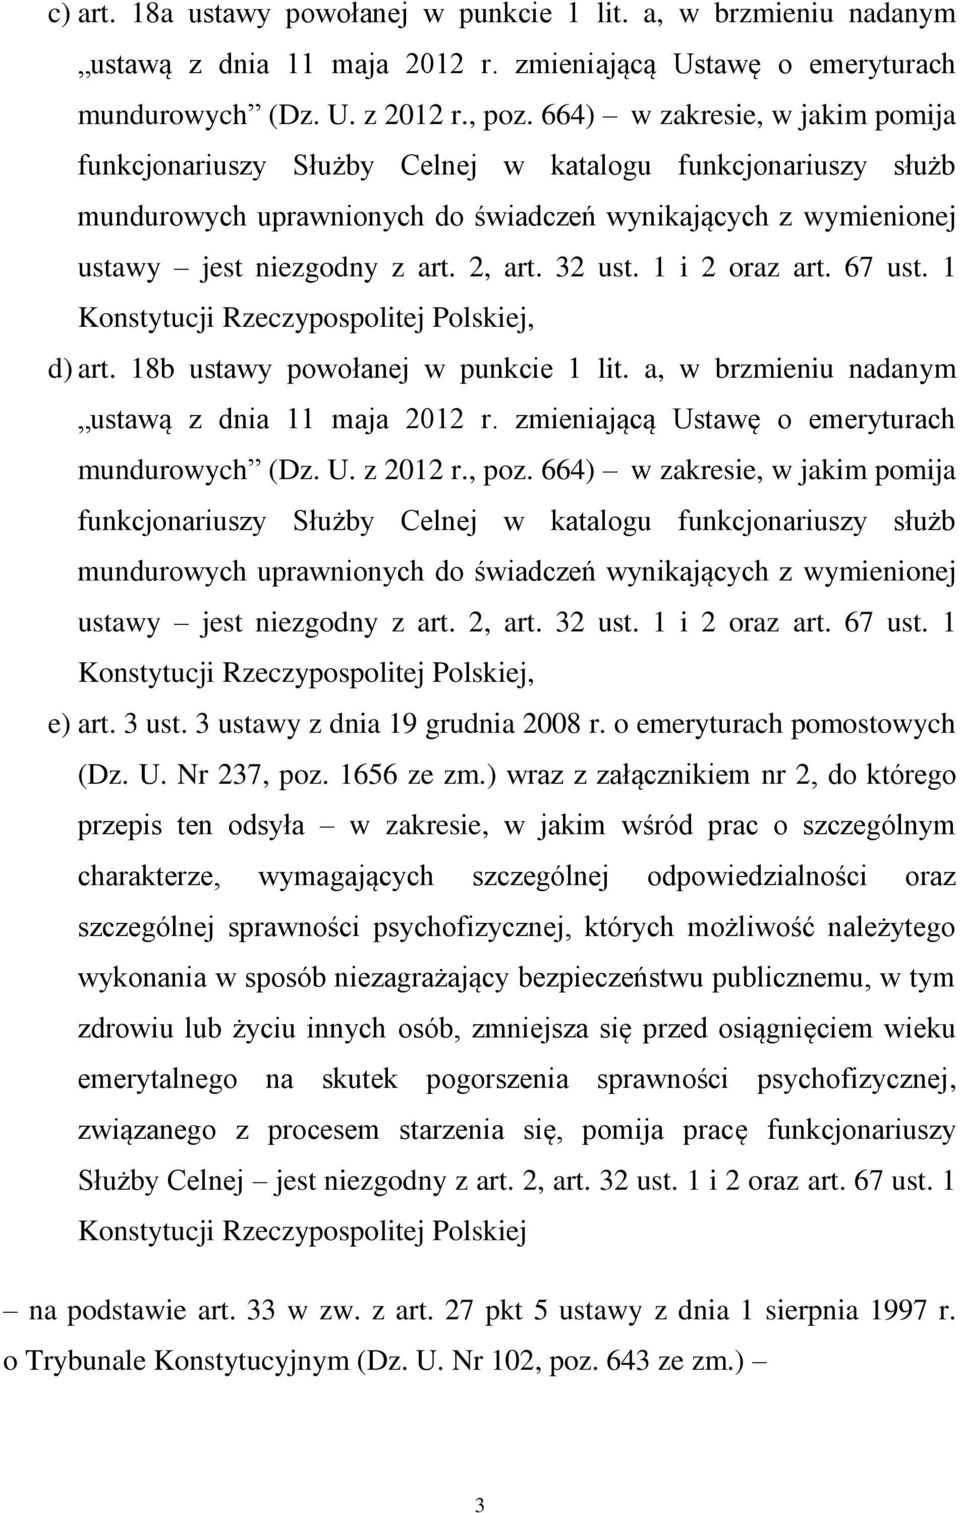 32 ust. 1 i 2 oraz art. 67 ust. 1 Konstytucji Rzeczypospolitej Polskiej, d) art. 18b ustawy powołanej w punkcie 1 lit. a, w brzmieniu nadanym ustawą z dnia 11 maja 2012 r.